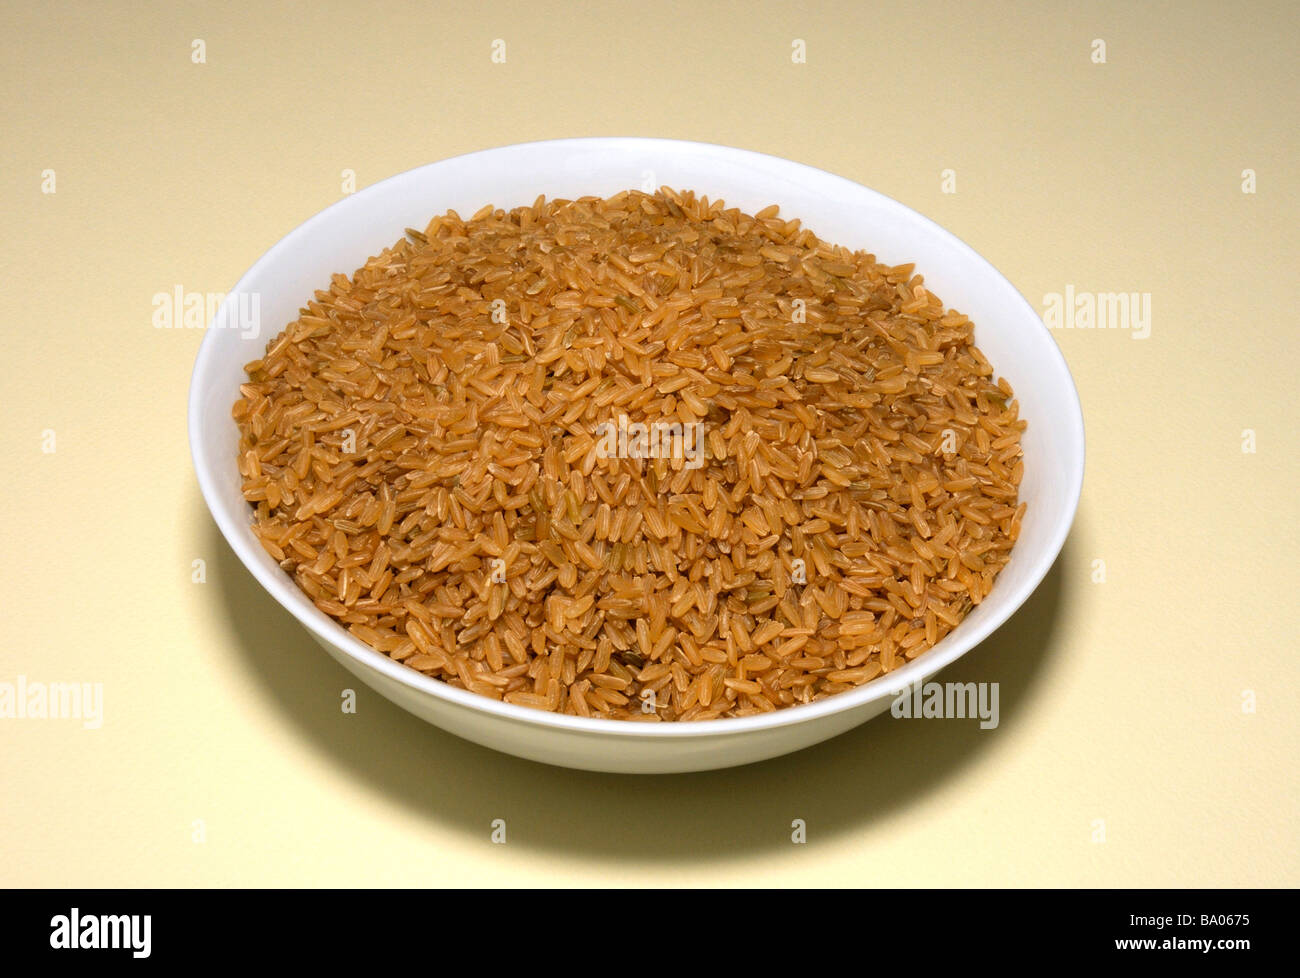 Brauner Reis in eine Schüssel geben. Stockfoto